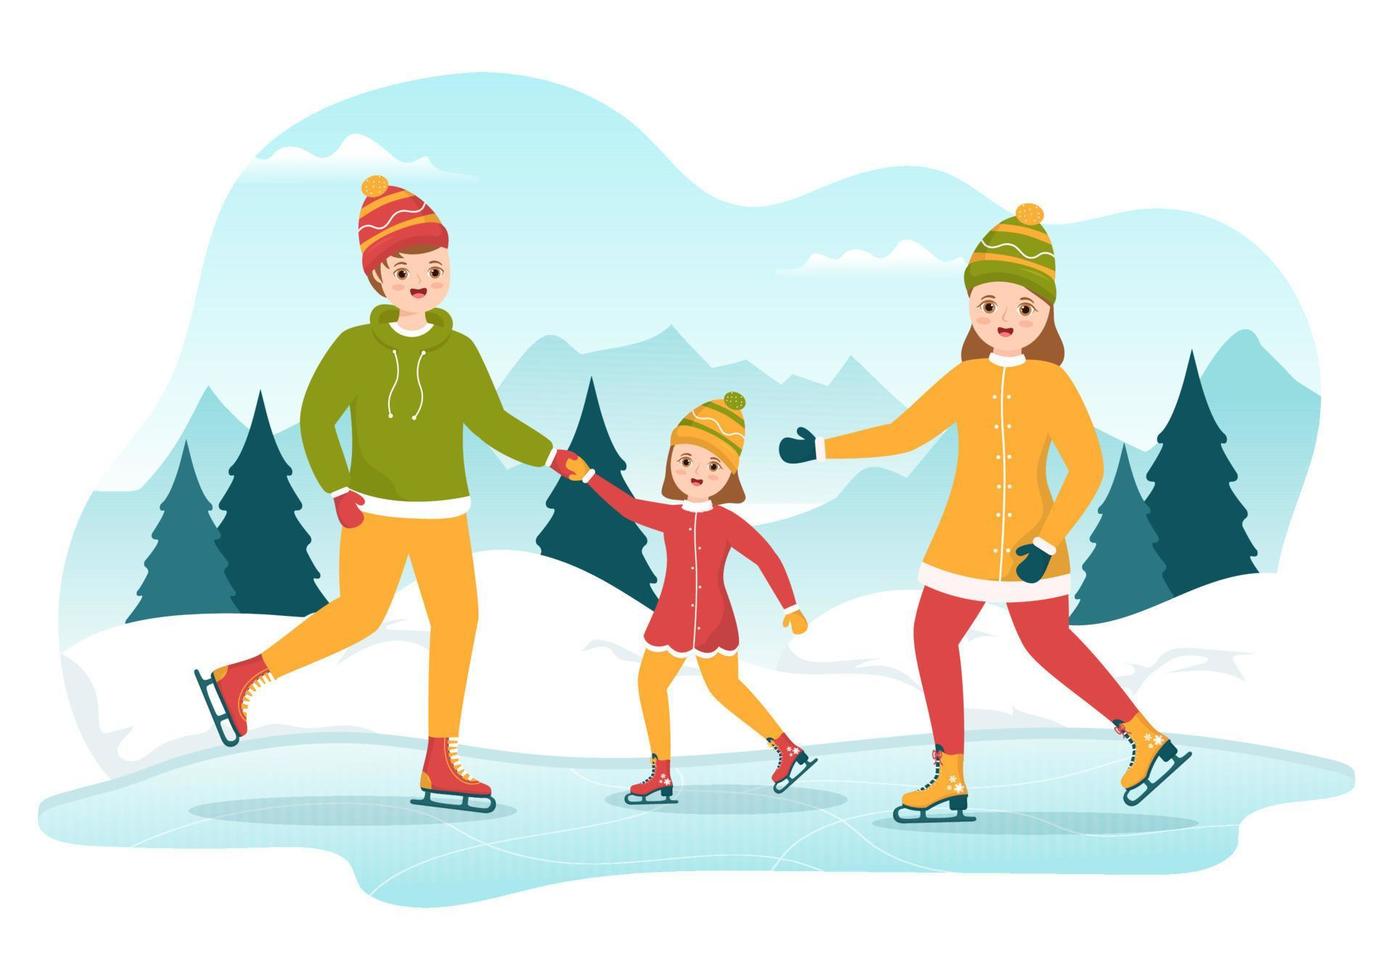 hombres, mujeres y niños patinando en la pista de hielo vistiendo ropa de invierno para actividades al aire libre en dibujos animados planos dibujados a mano ilustración de plantillas vector